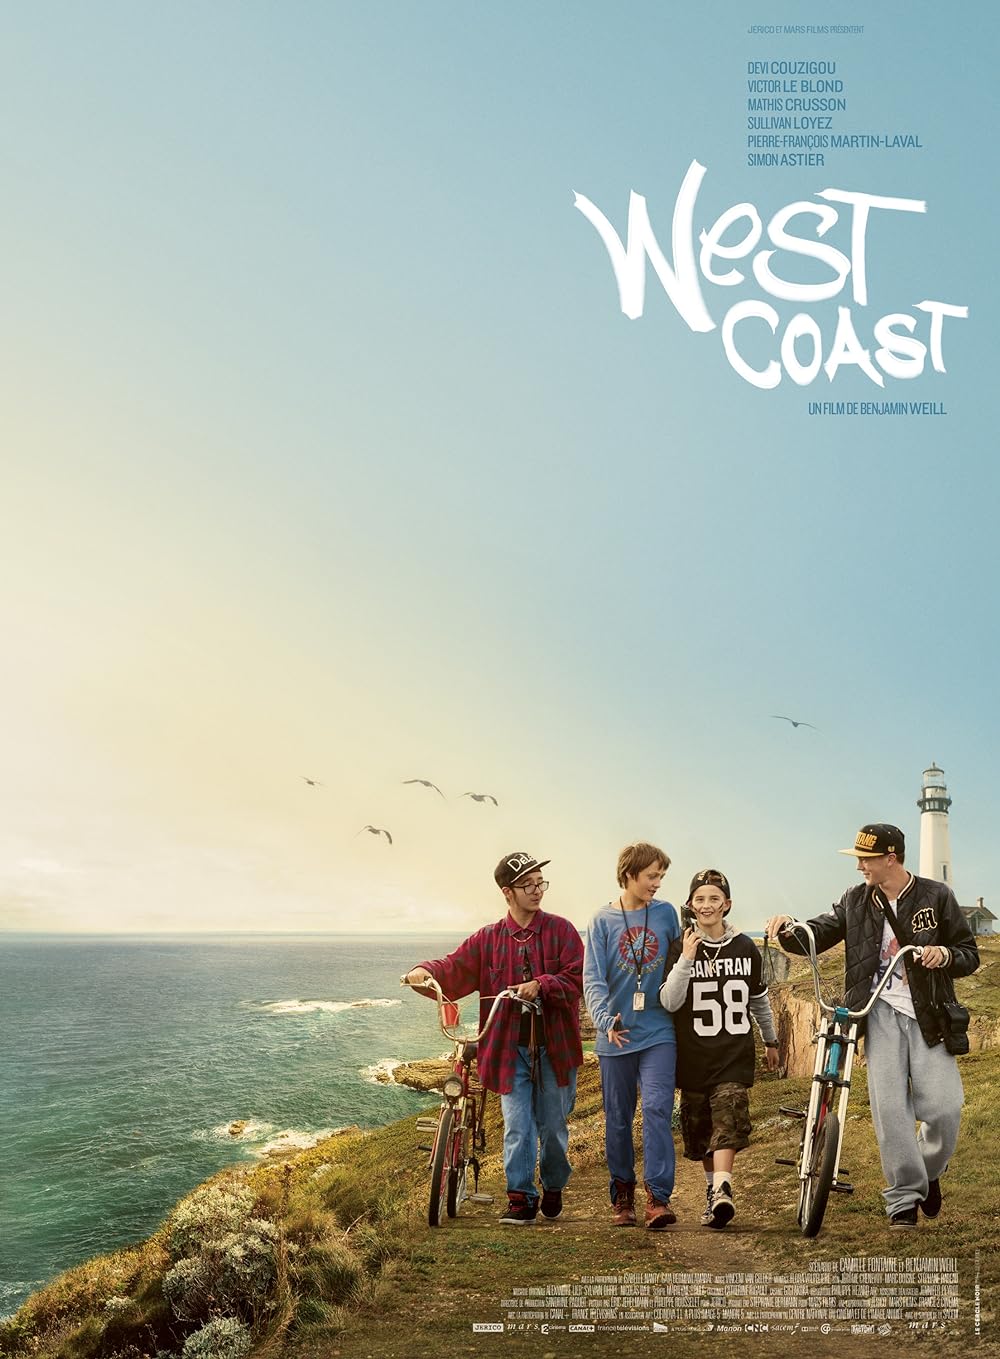 ashfak rahman recommends West Coast Productions Trailers